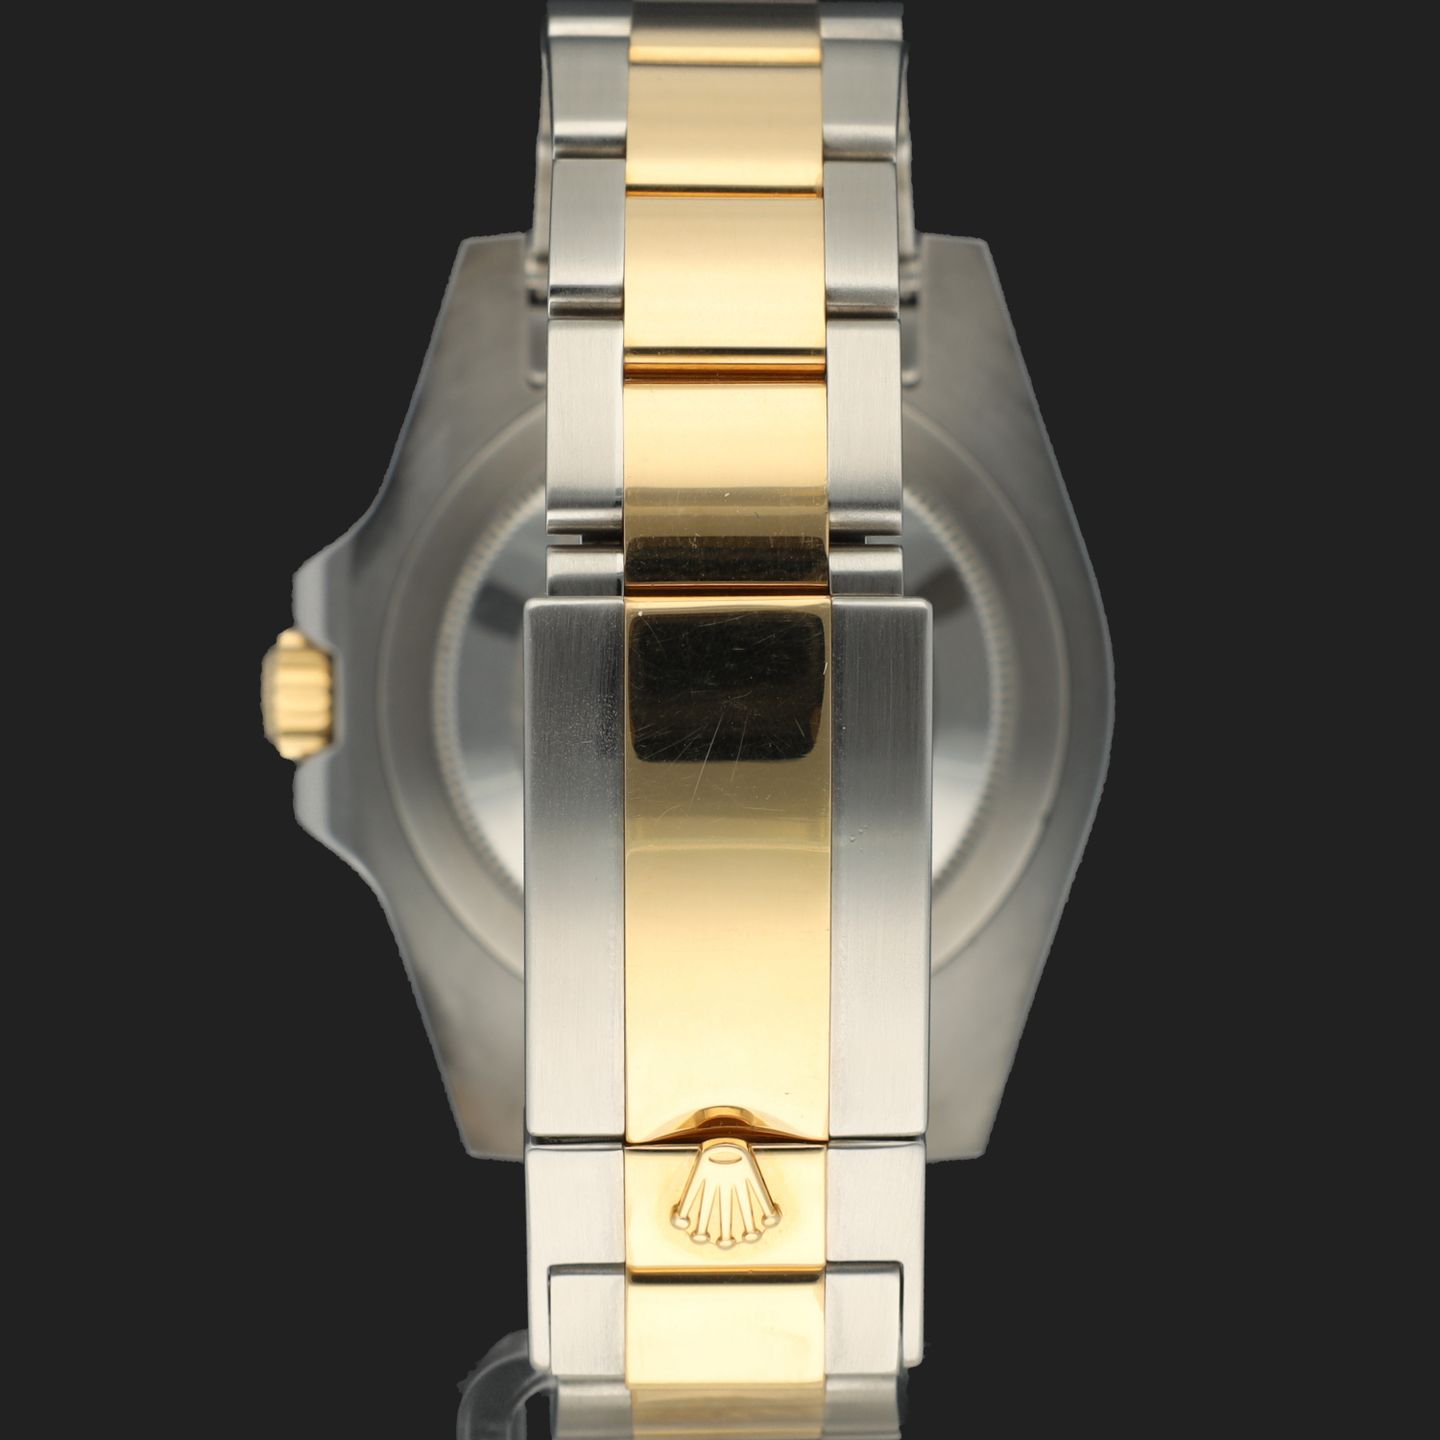 Rolex GMT-Master II 116713LN (2011) - 40 mm Gold/Steel case (6/8)